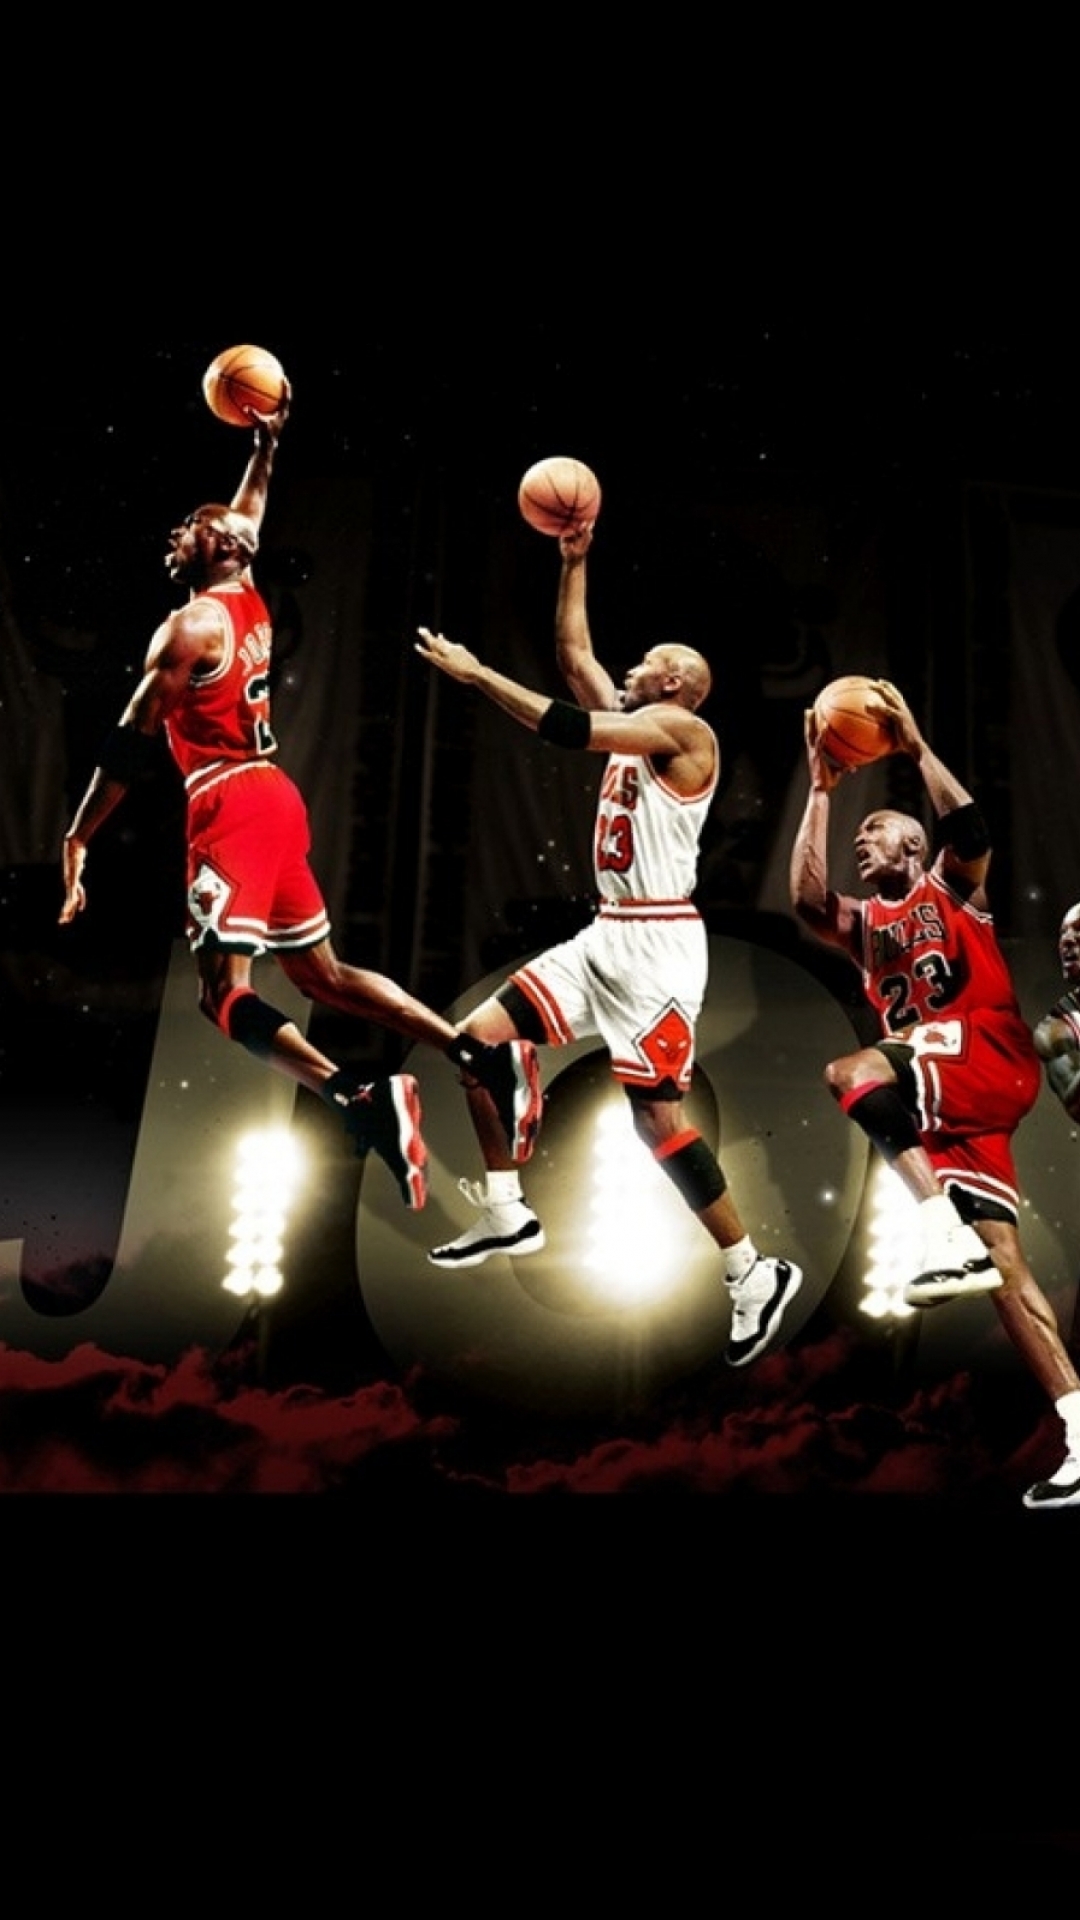 19 Michael Jordan AppleiPhone 7 Plus 1080x1920 Wallpapers 1080x1920